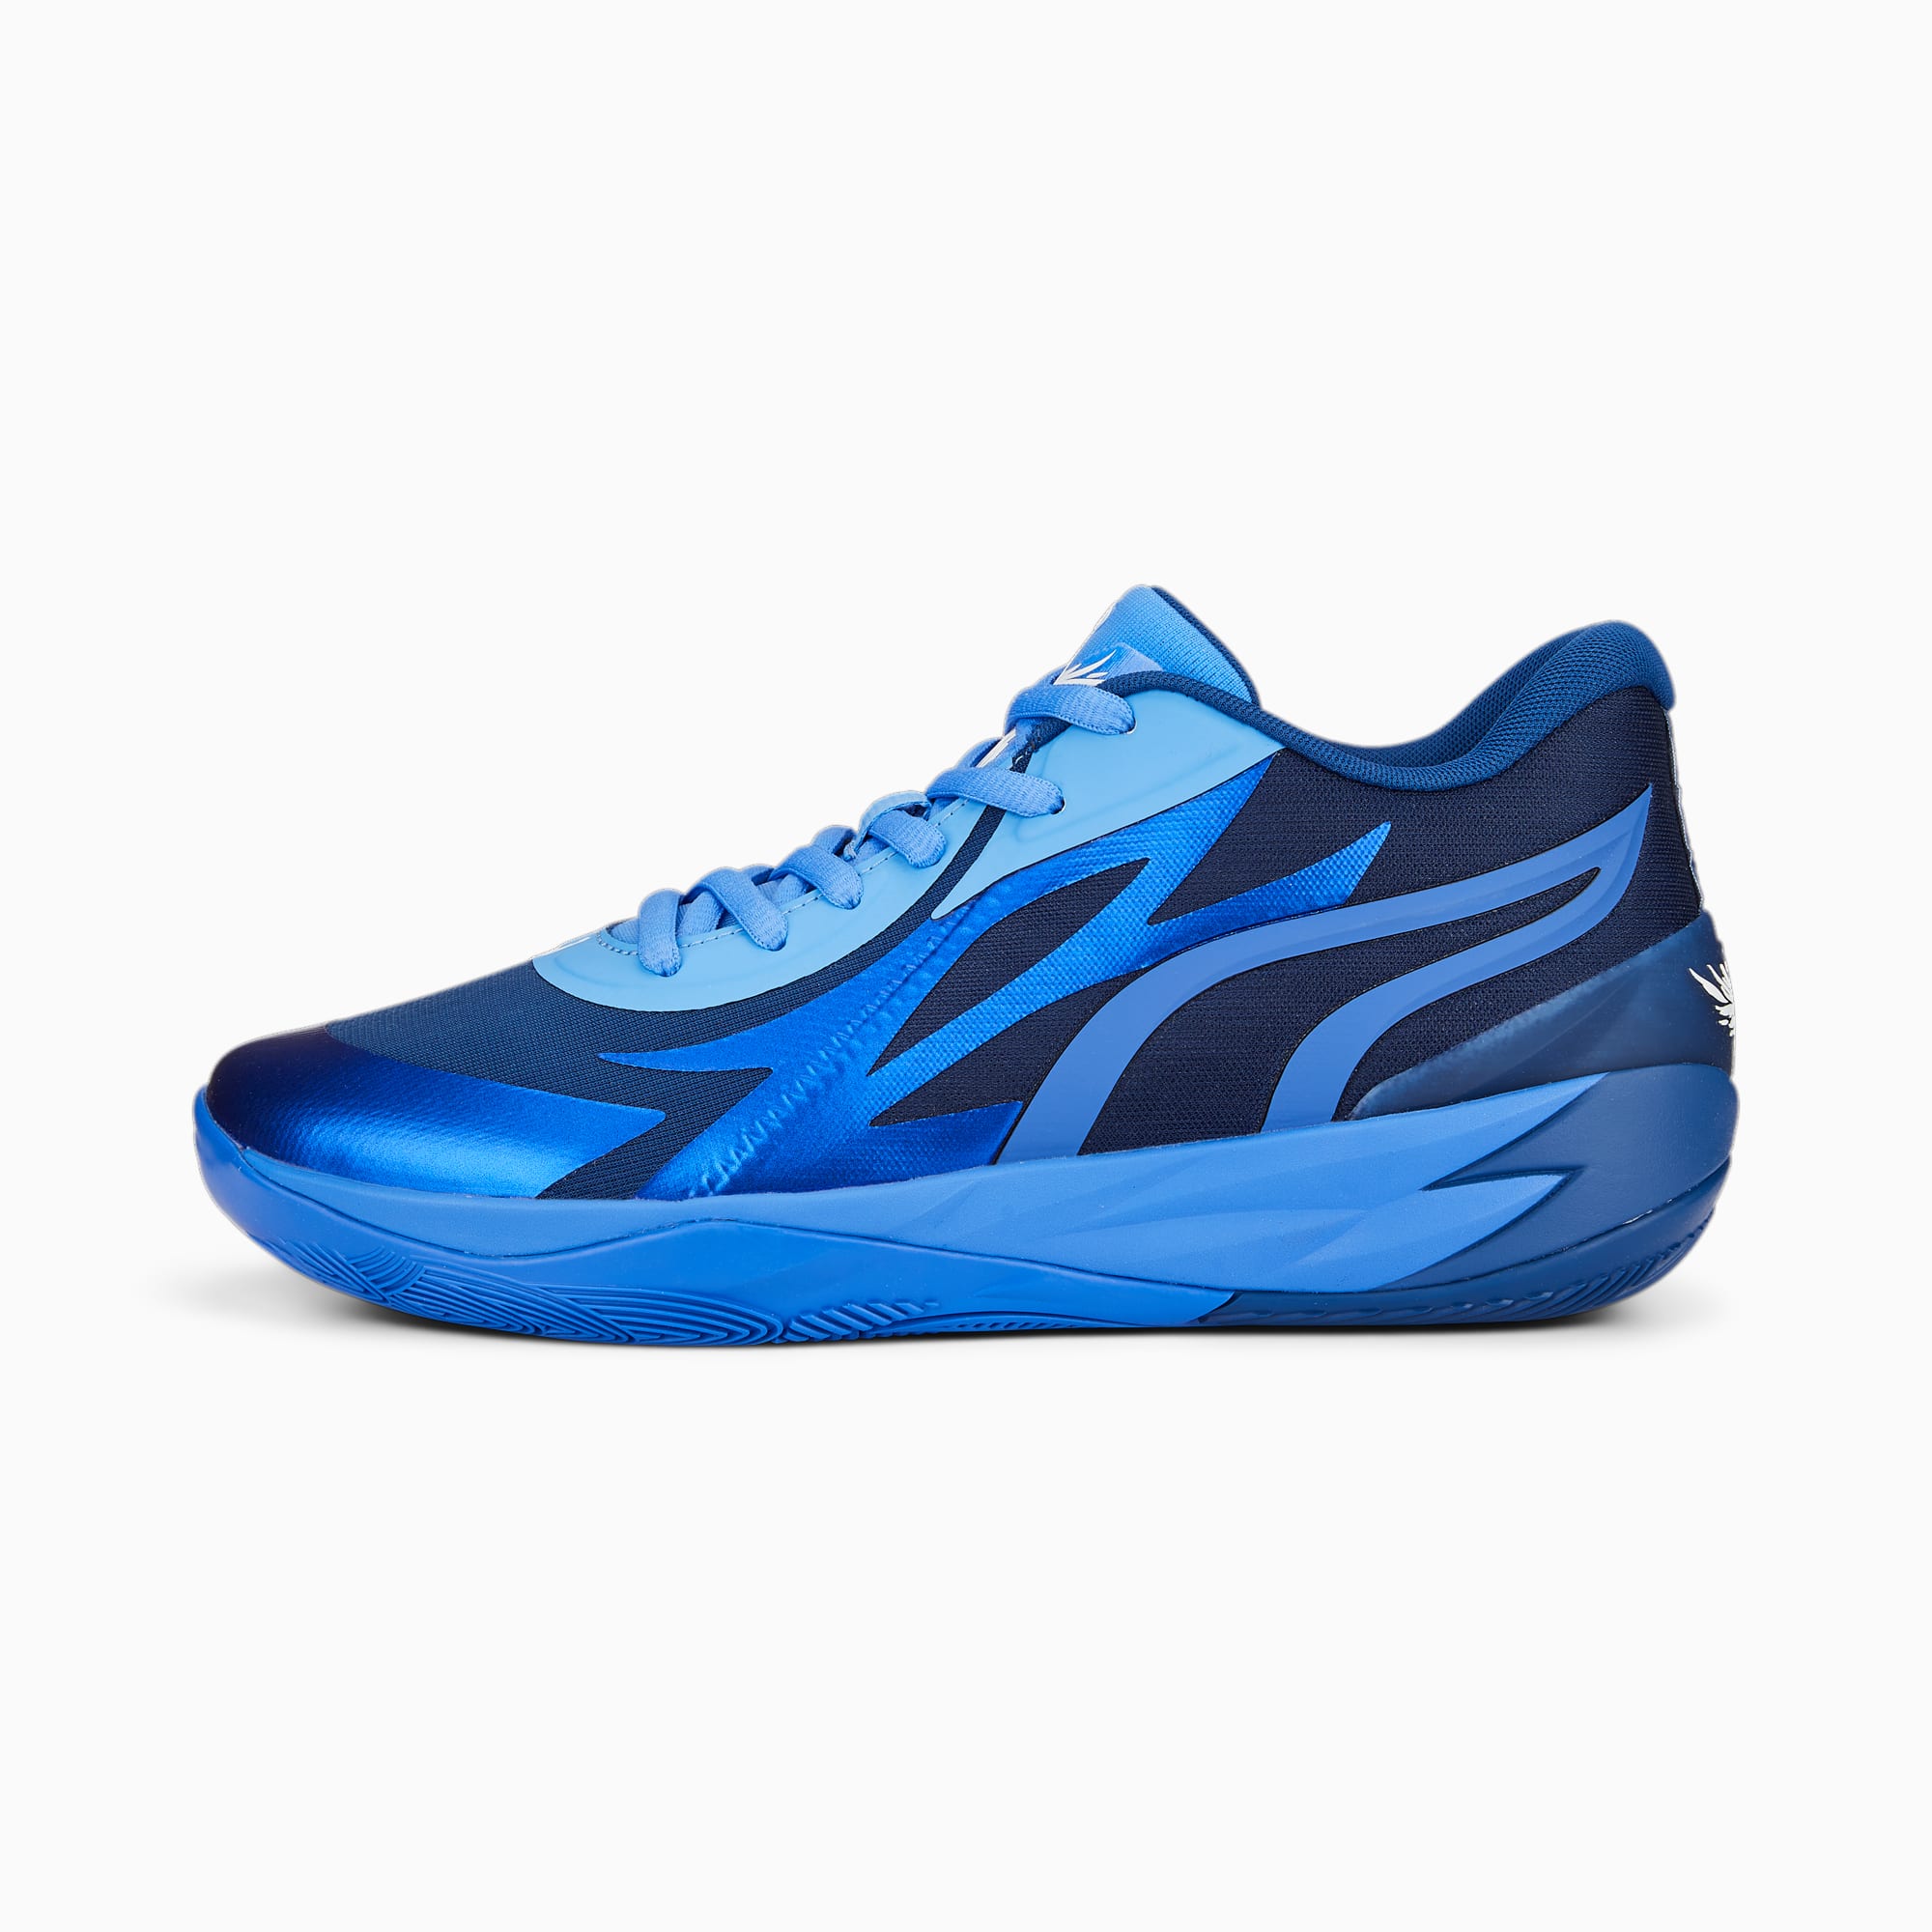 MB.02 Lo Unisex Basketball Shoes | Blazing Blue-Royal Sapphire | PUMA ...